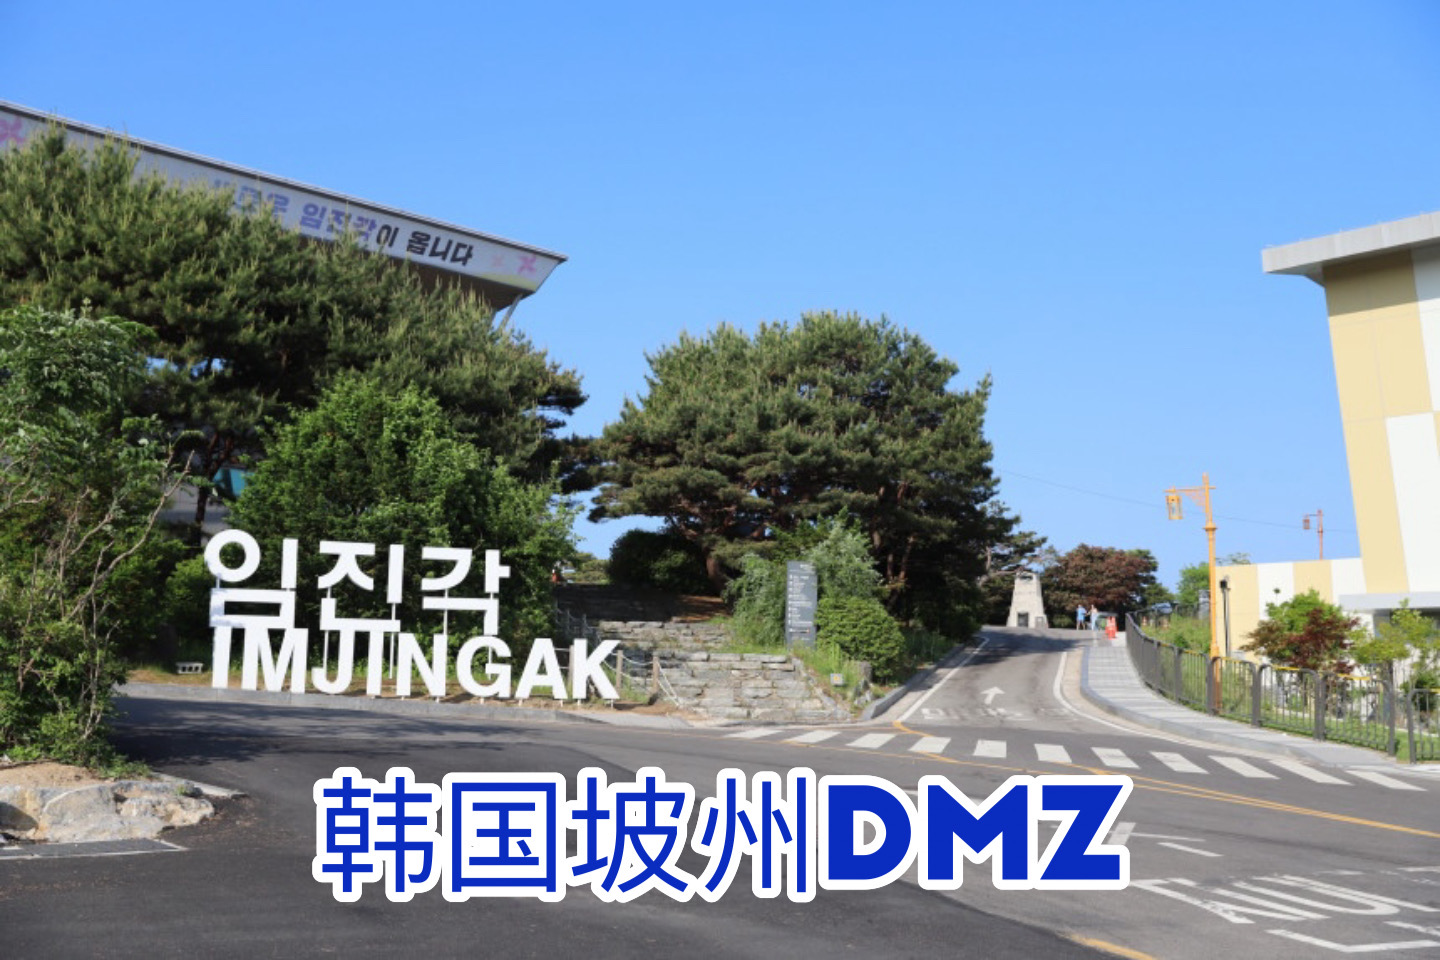 与您一起游览 韩国坡州DMZ